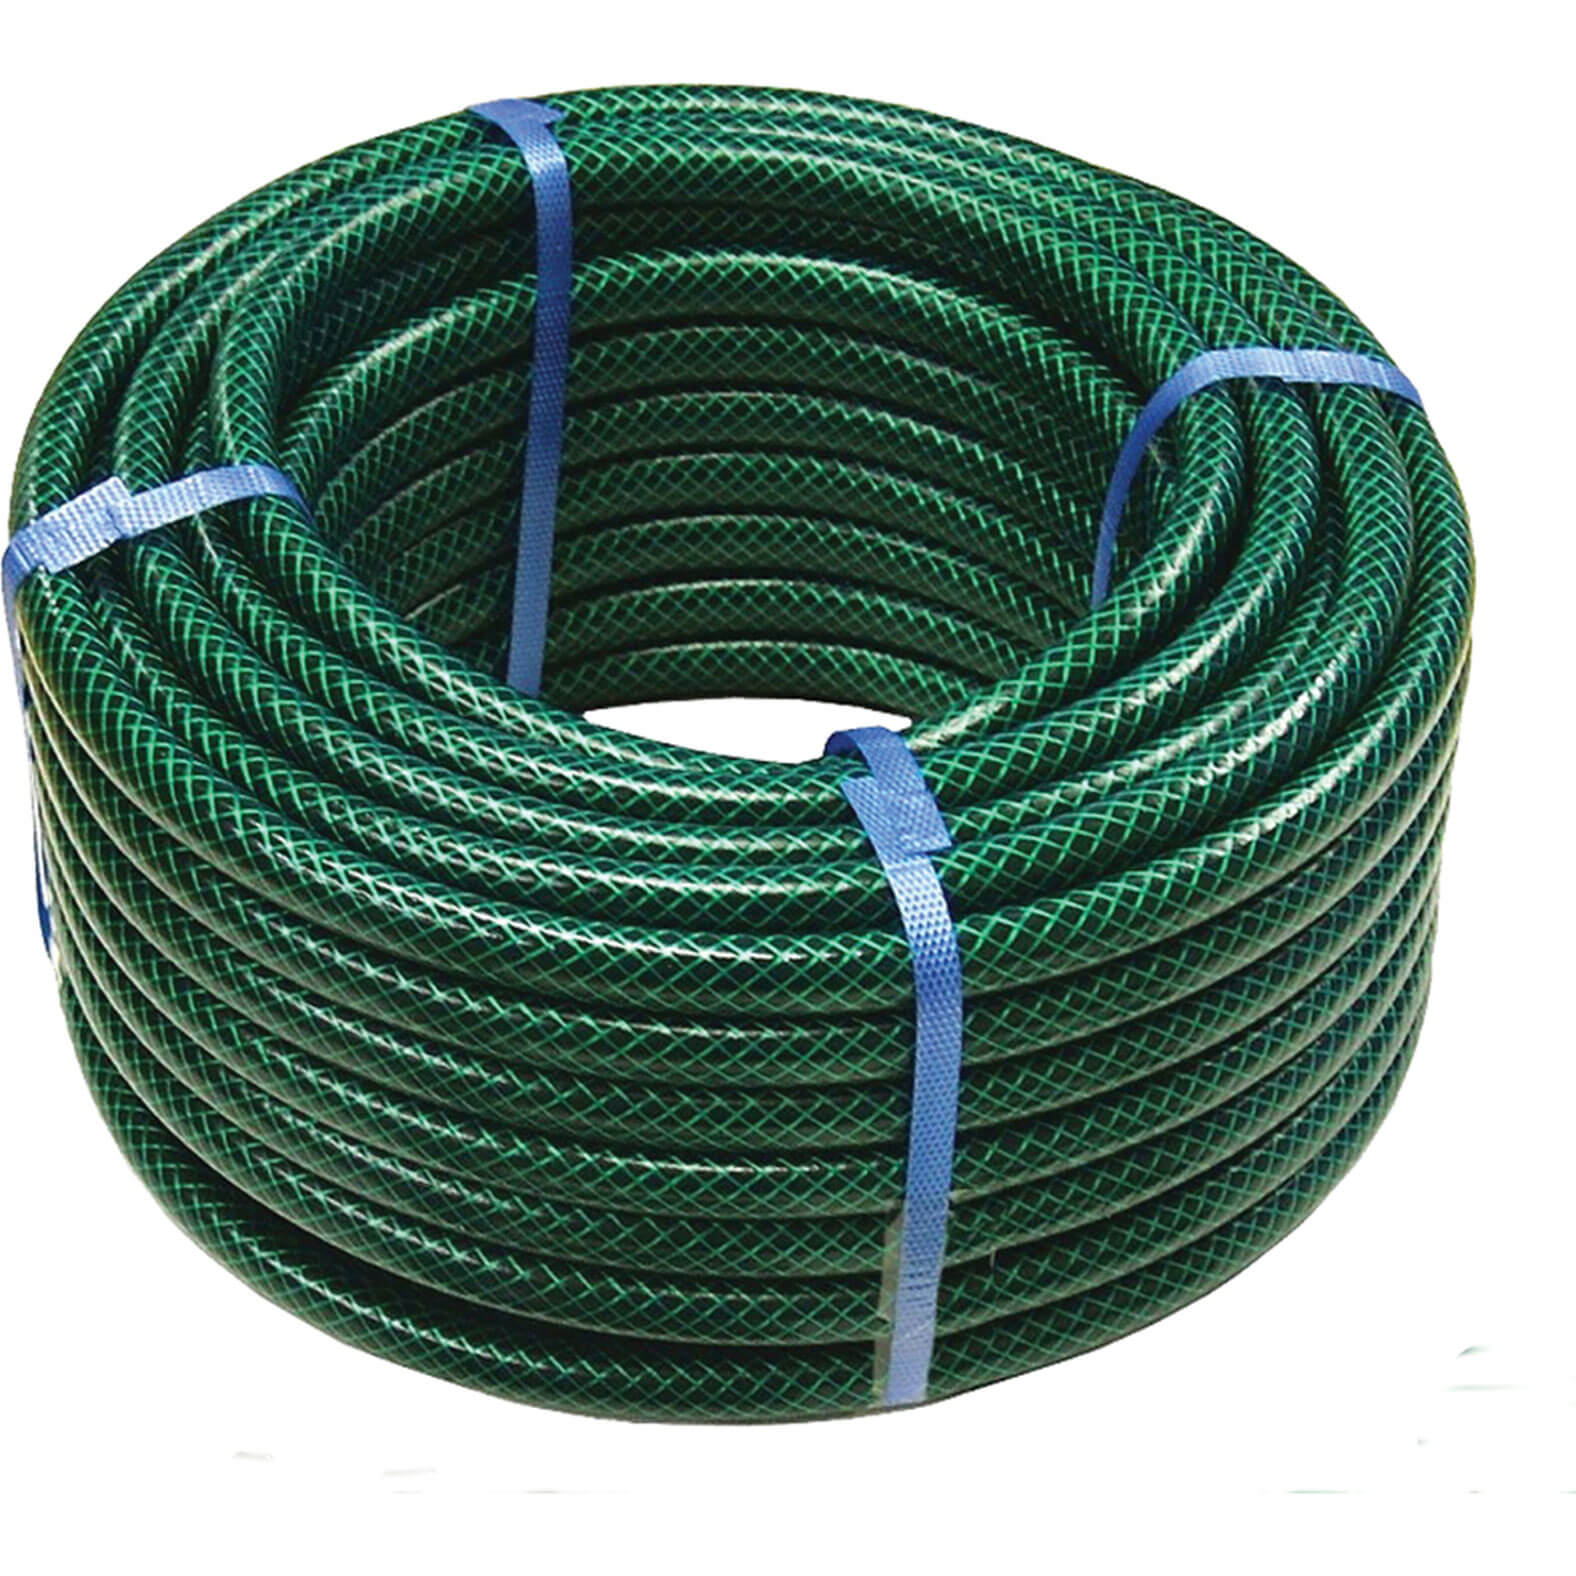 Image of Faithfull PVC Reinforced Garden Hose Pipe 1/2" / 12.5mm 30m Green